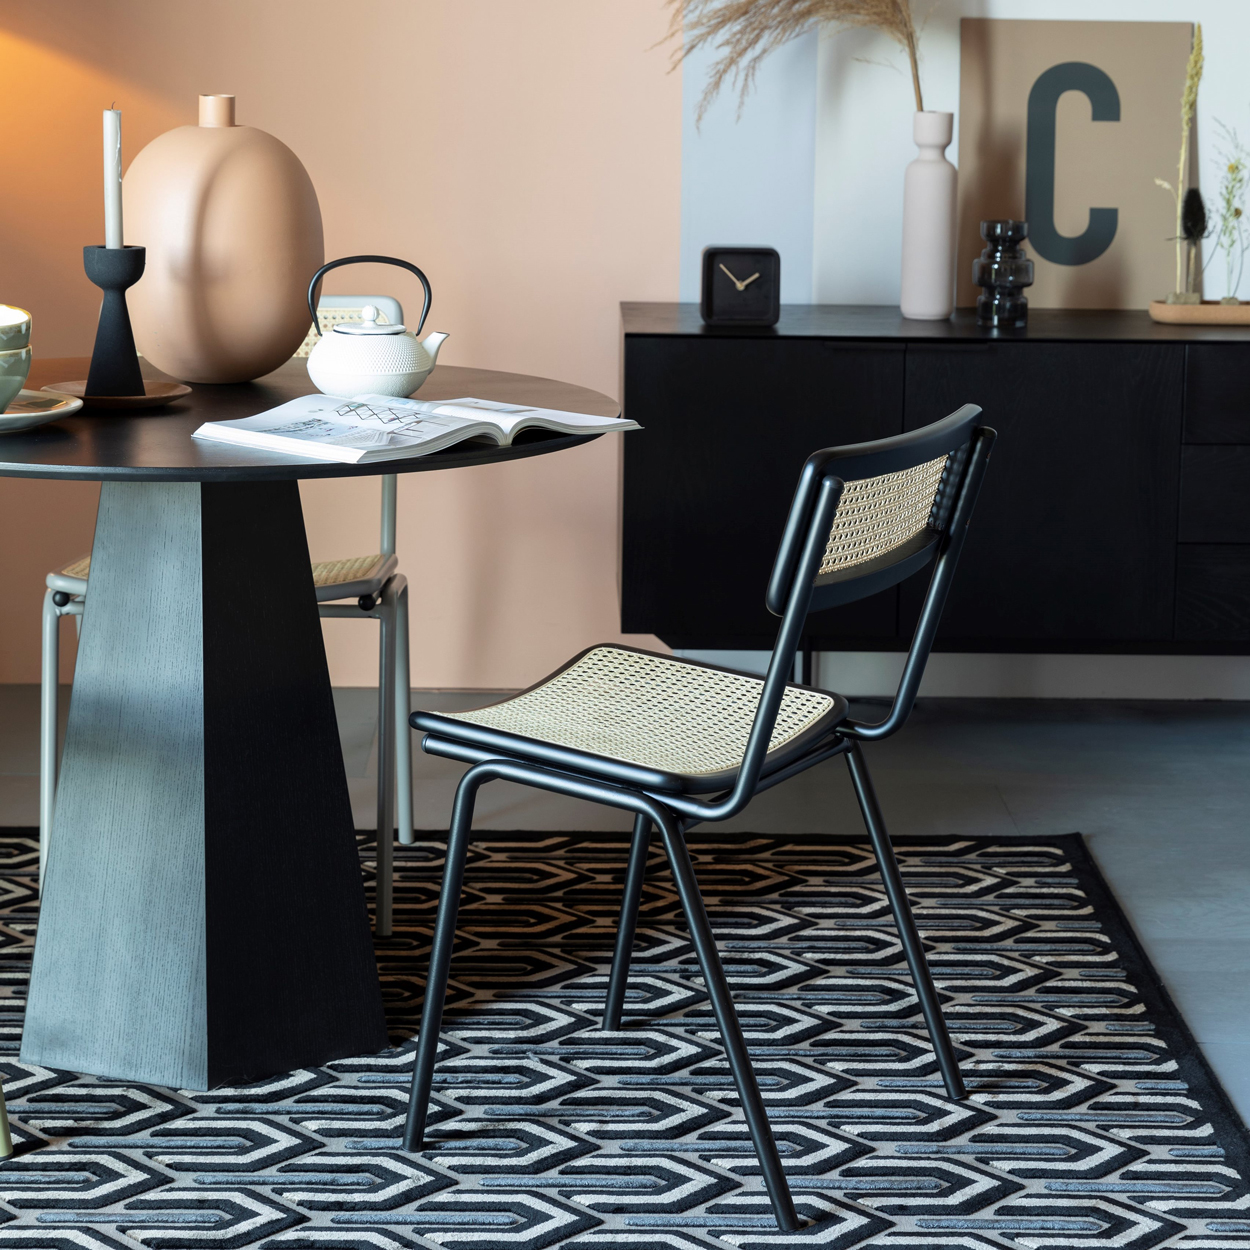 De Jort eetkamerstoel heeft een mix van modern design en klassieke elementen en staat hierdoor prachtig in veel interieurs.